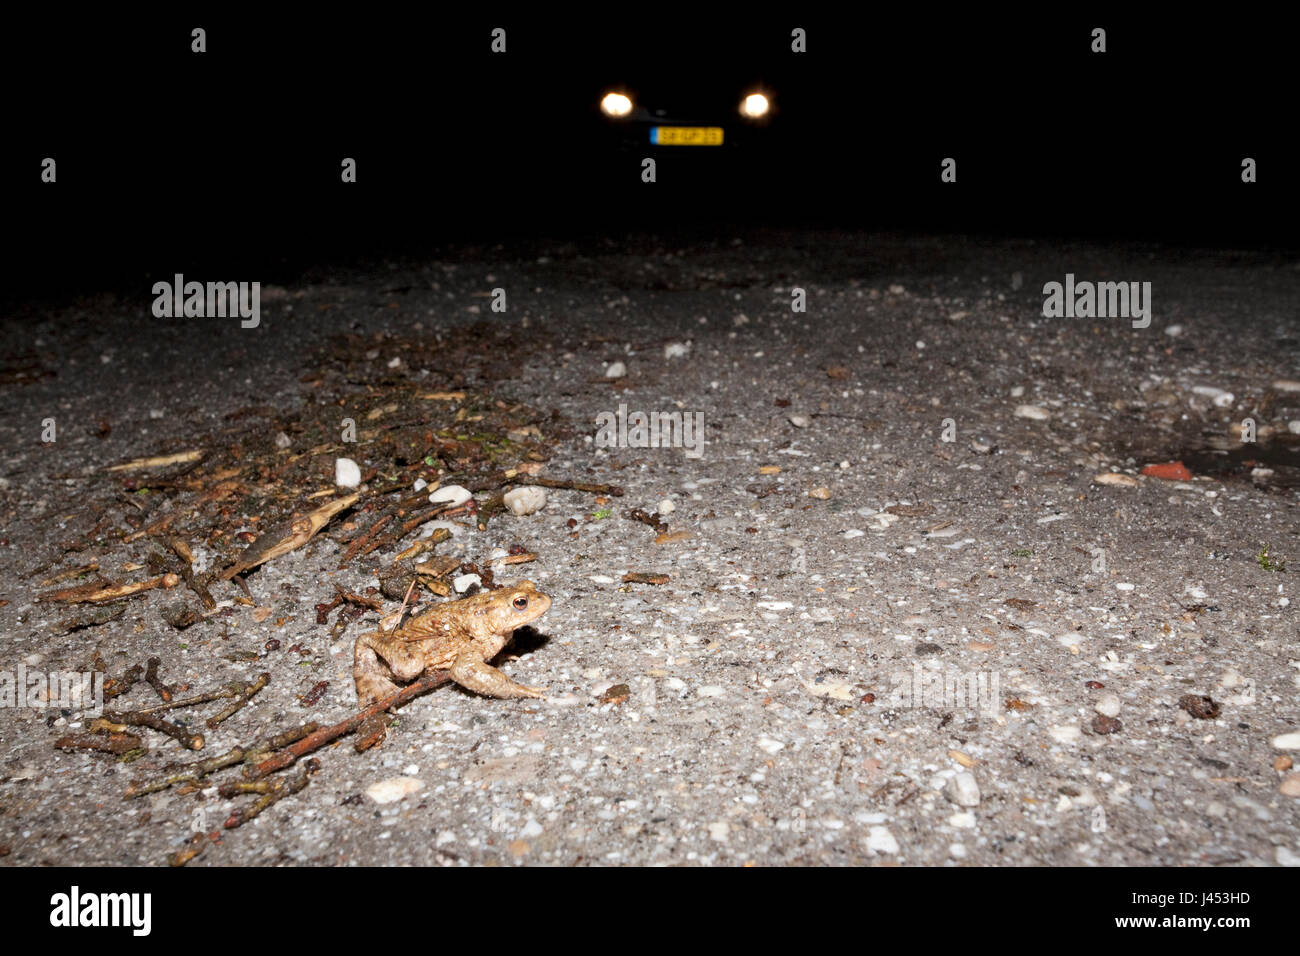 Foto de un sapo común cruzar una carretera durante la migración de primavera en la noche con un coche en el fondo con los faros Foto de stock